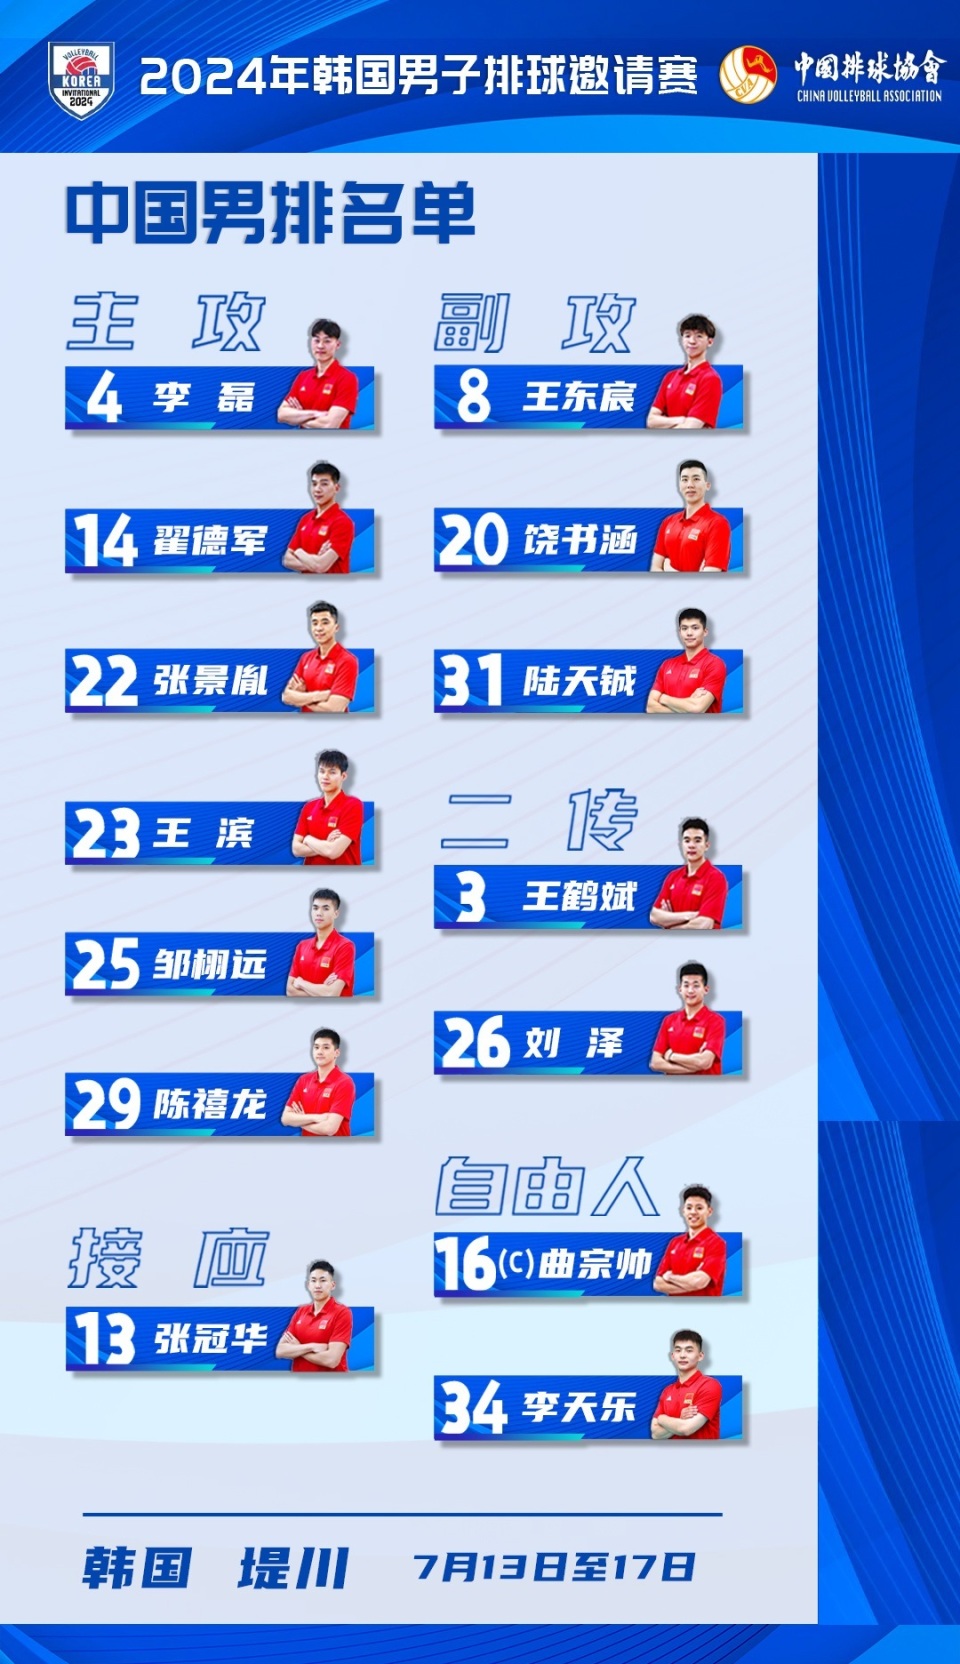 队长曲宗帅,韩国杯邀请赛中国男排14人名单,仅三位主力赴韩